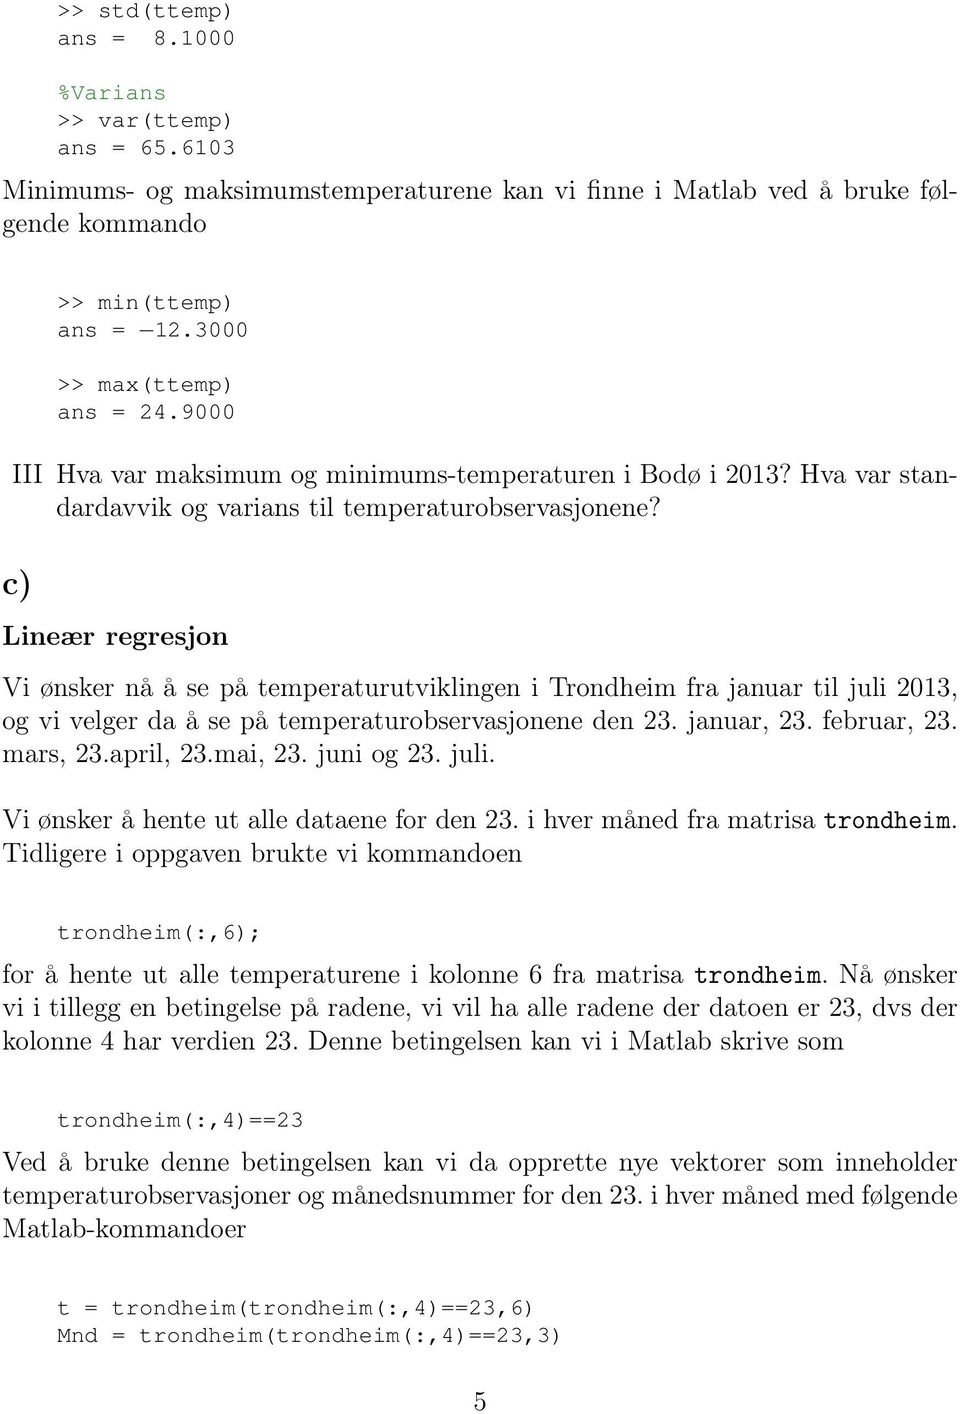 c) Lineær regresjon Vi ønsker nå å se på temperaturutviklingen i Trondheim fra januar til juli 2013, og vi velger da å se på temperaturobservasjonene den 23. januar, 23. februar, 23. mars, 23.